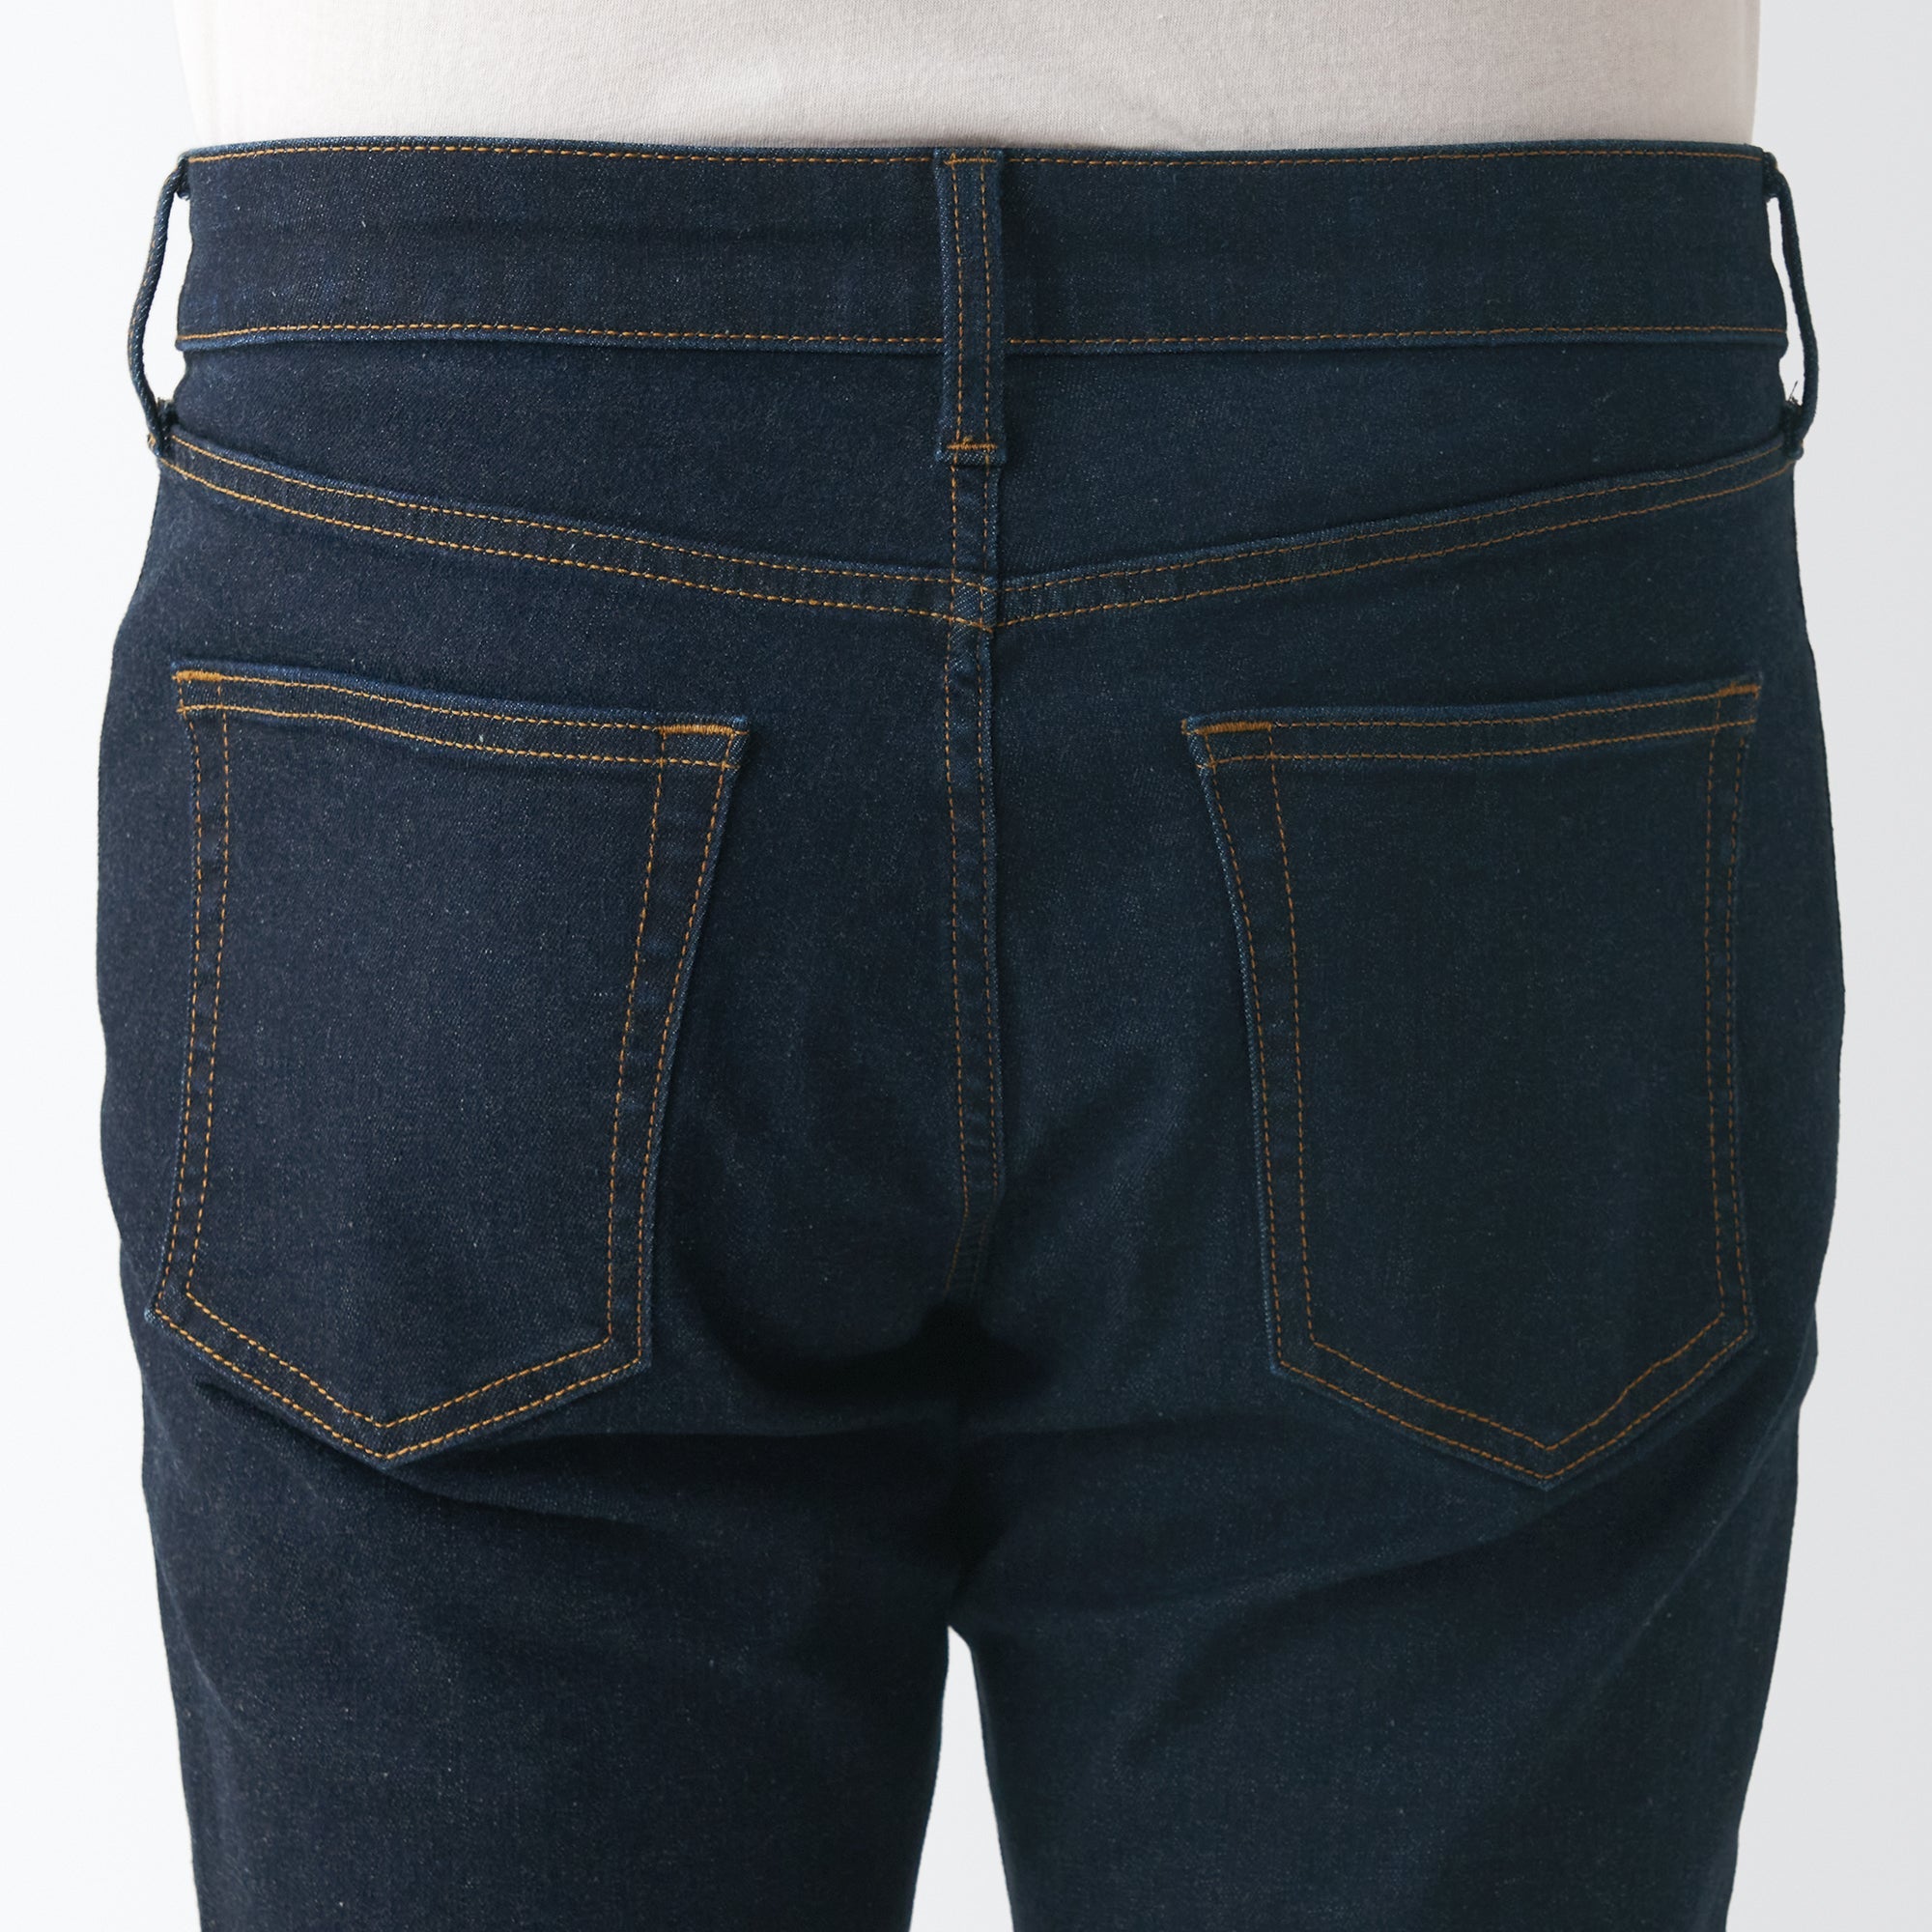 Men's Super Stretch Denim Skinny Pants Dark Navy (L 32inch / 82cm